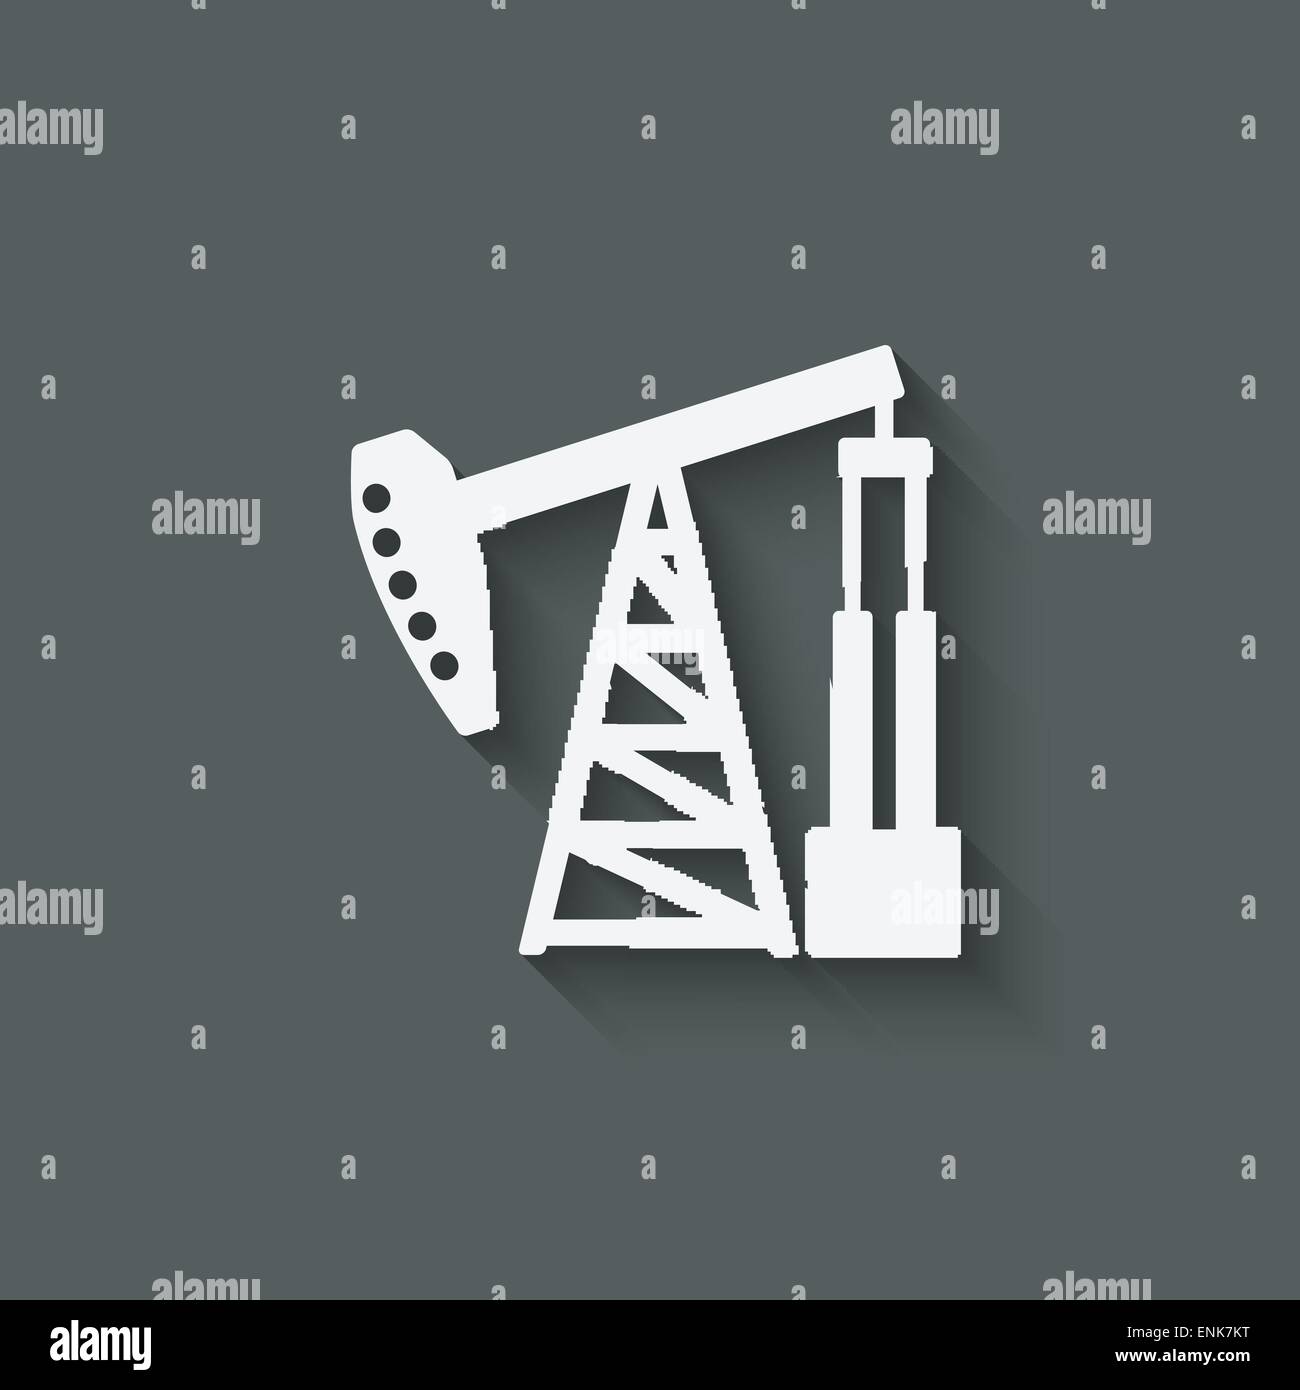 oil pump symbol - vector illustration. eps 10 Stock Vector